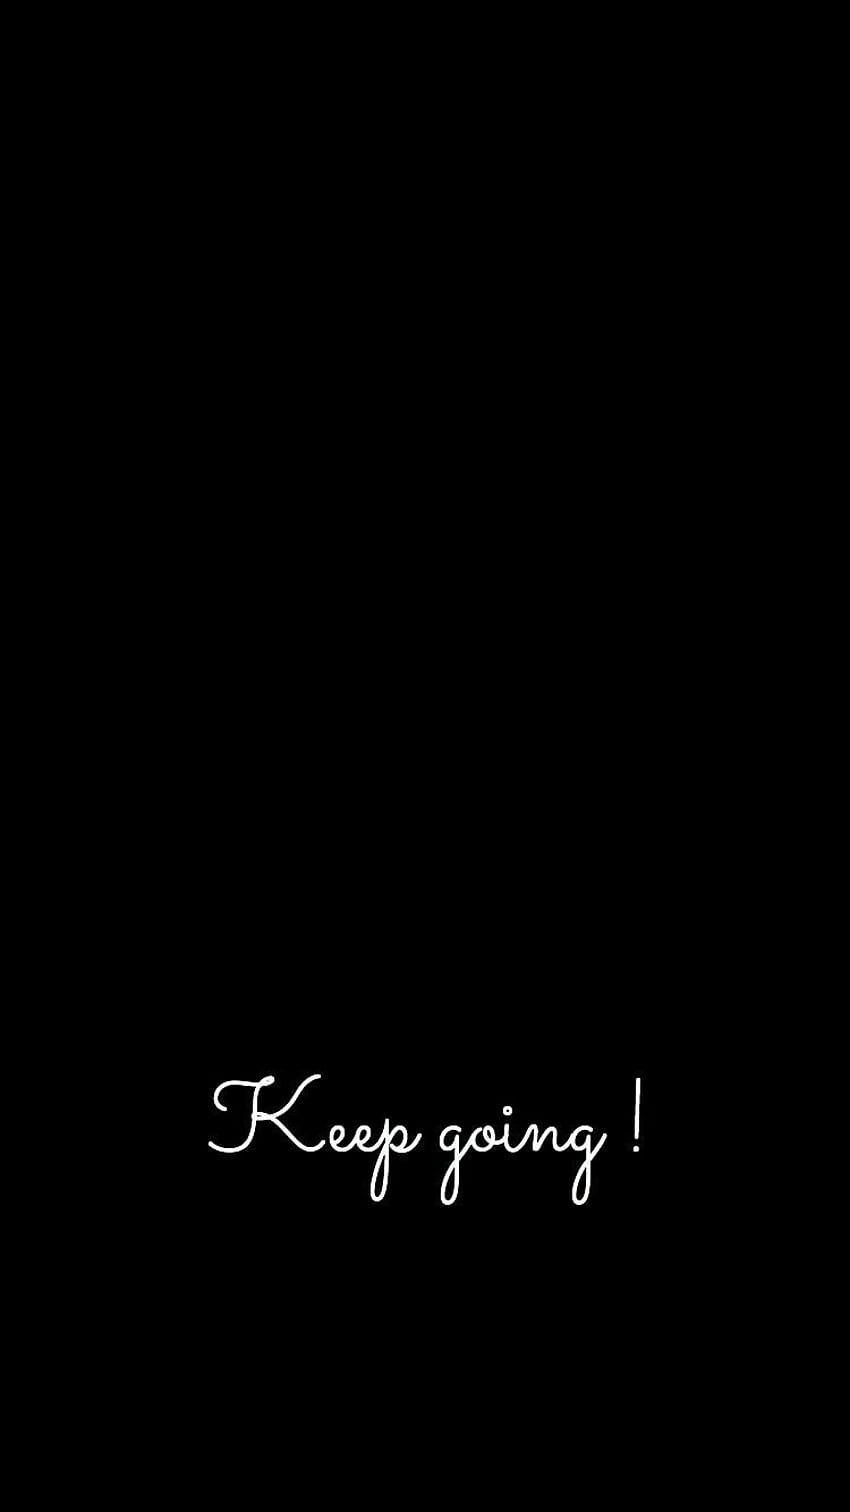 Keep going motivation black, going dark HD phone wallpaper | Pxfuel